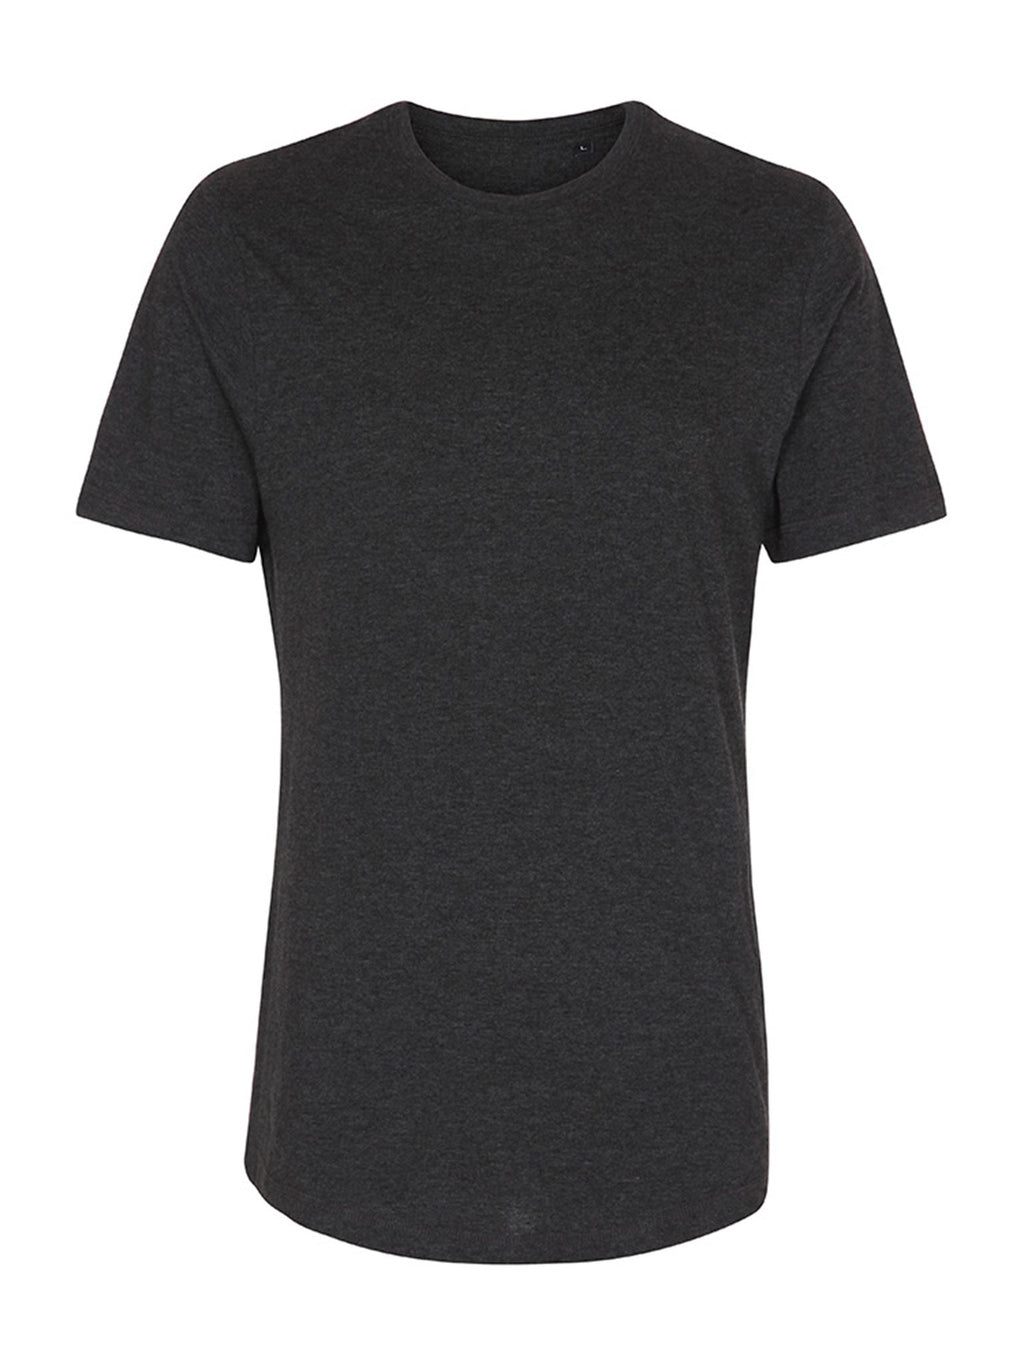 T-shirt long - mélange gris foncé